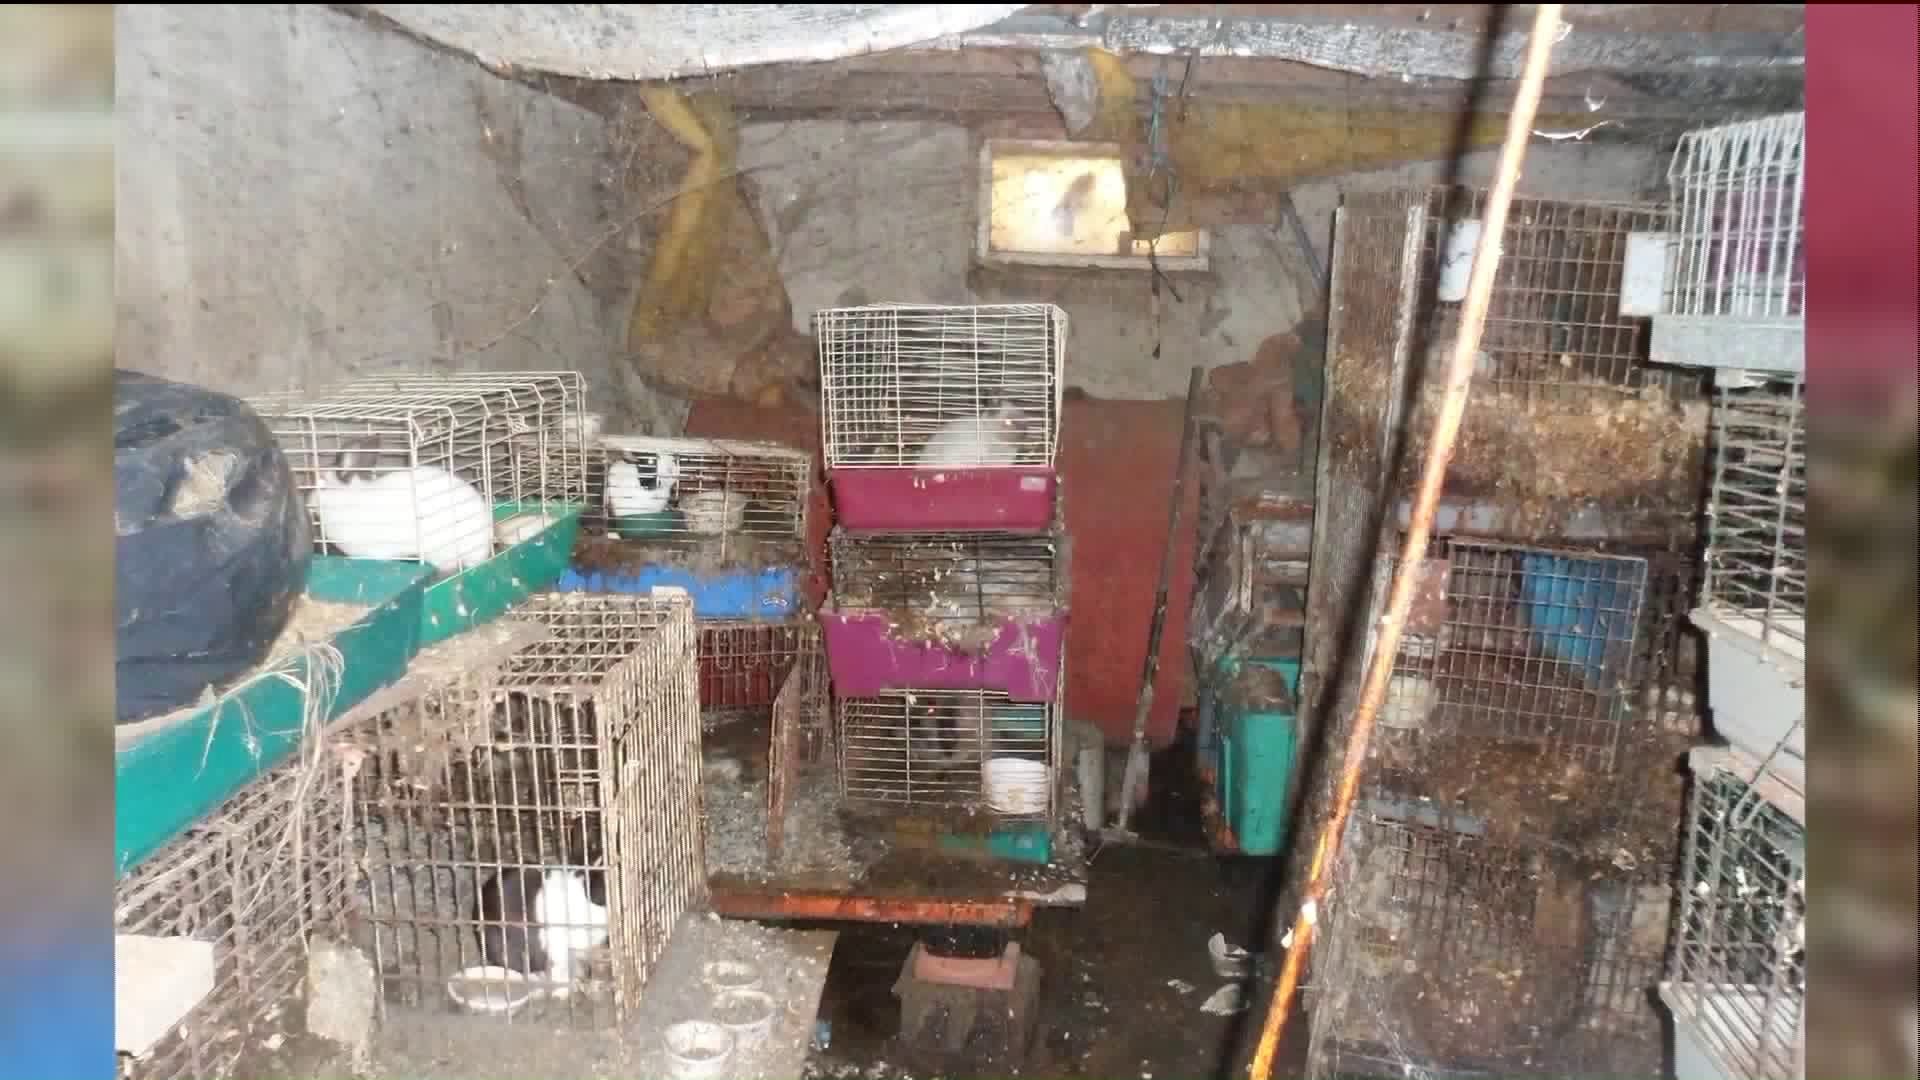 31 animals, 2 dead animals seized from Litchfield home